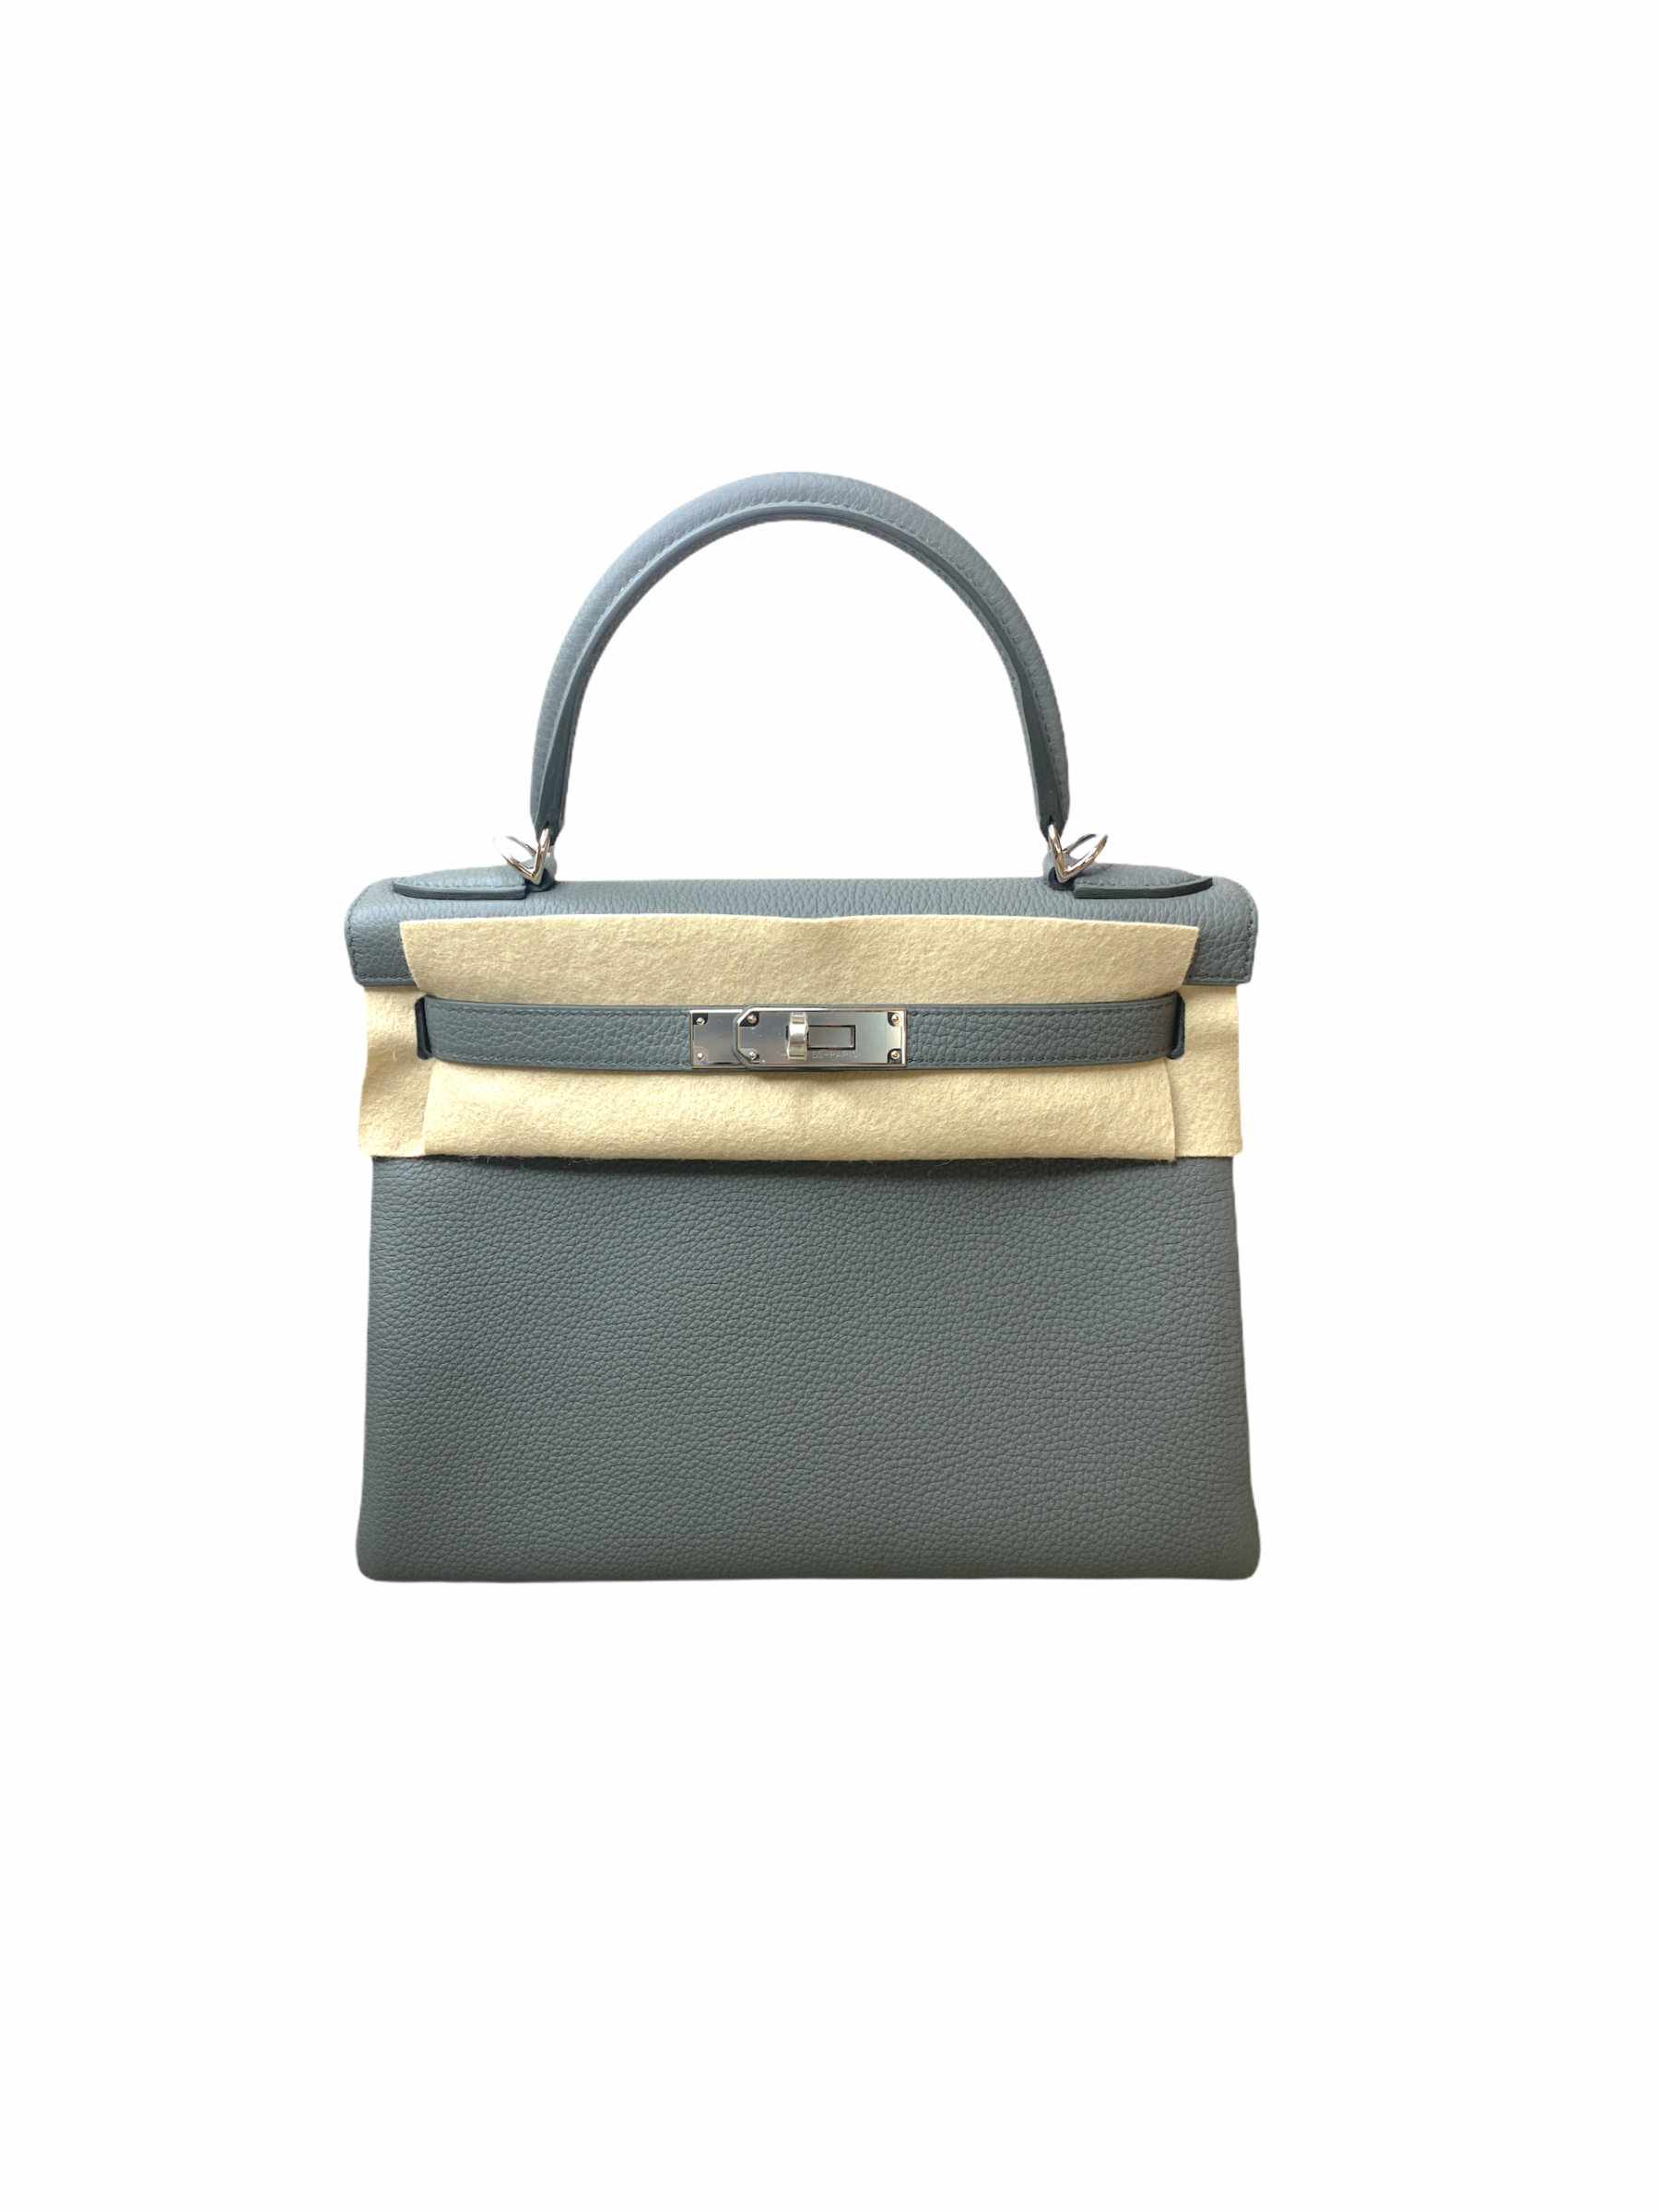 Shop Pre Owned Hermes Kelly 28 Retourne Vert Amande Handbag